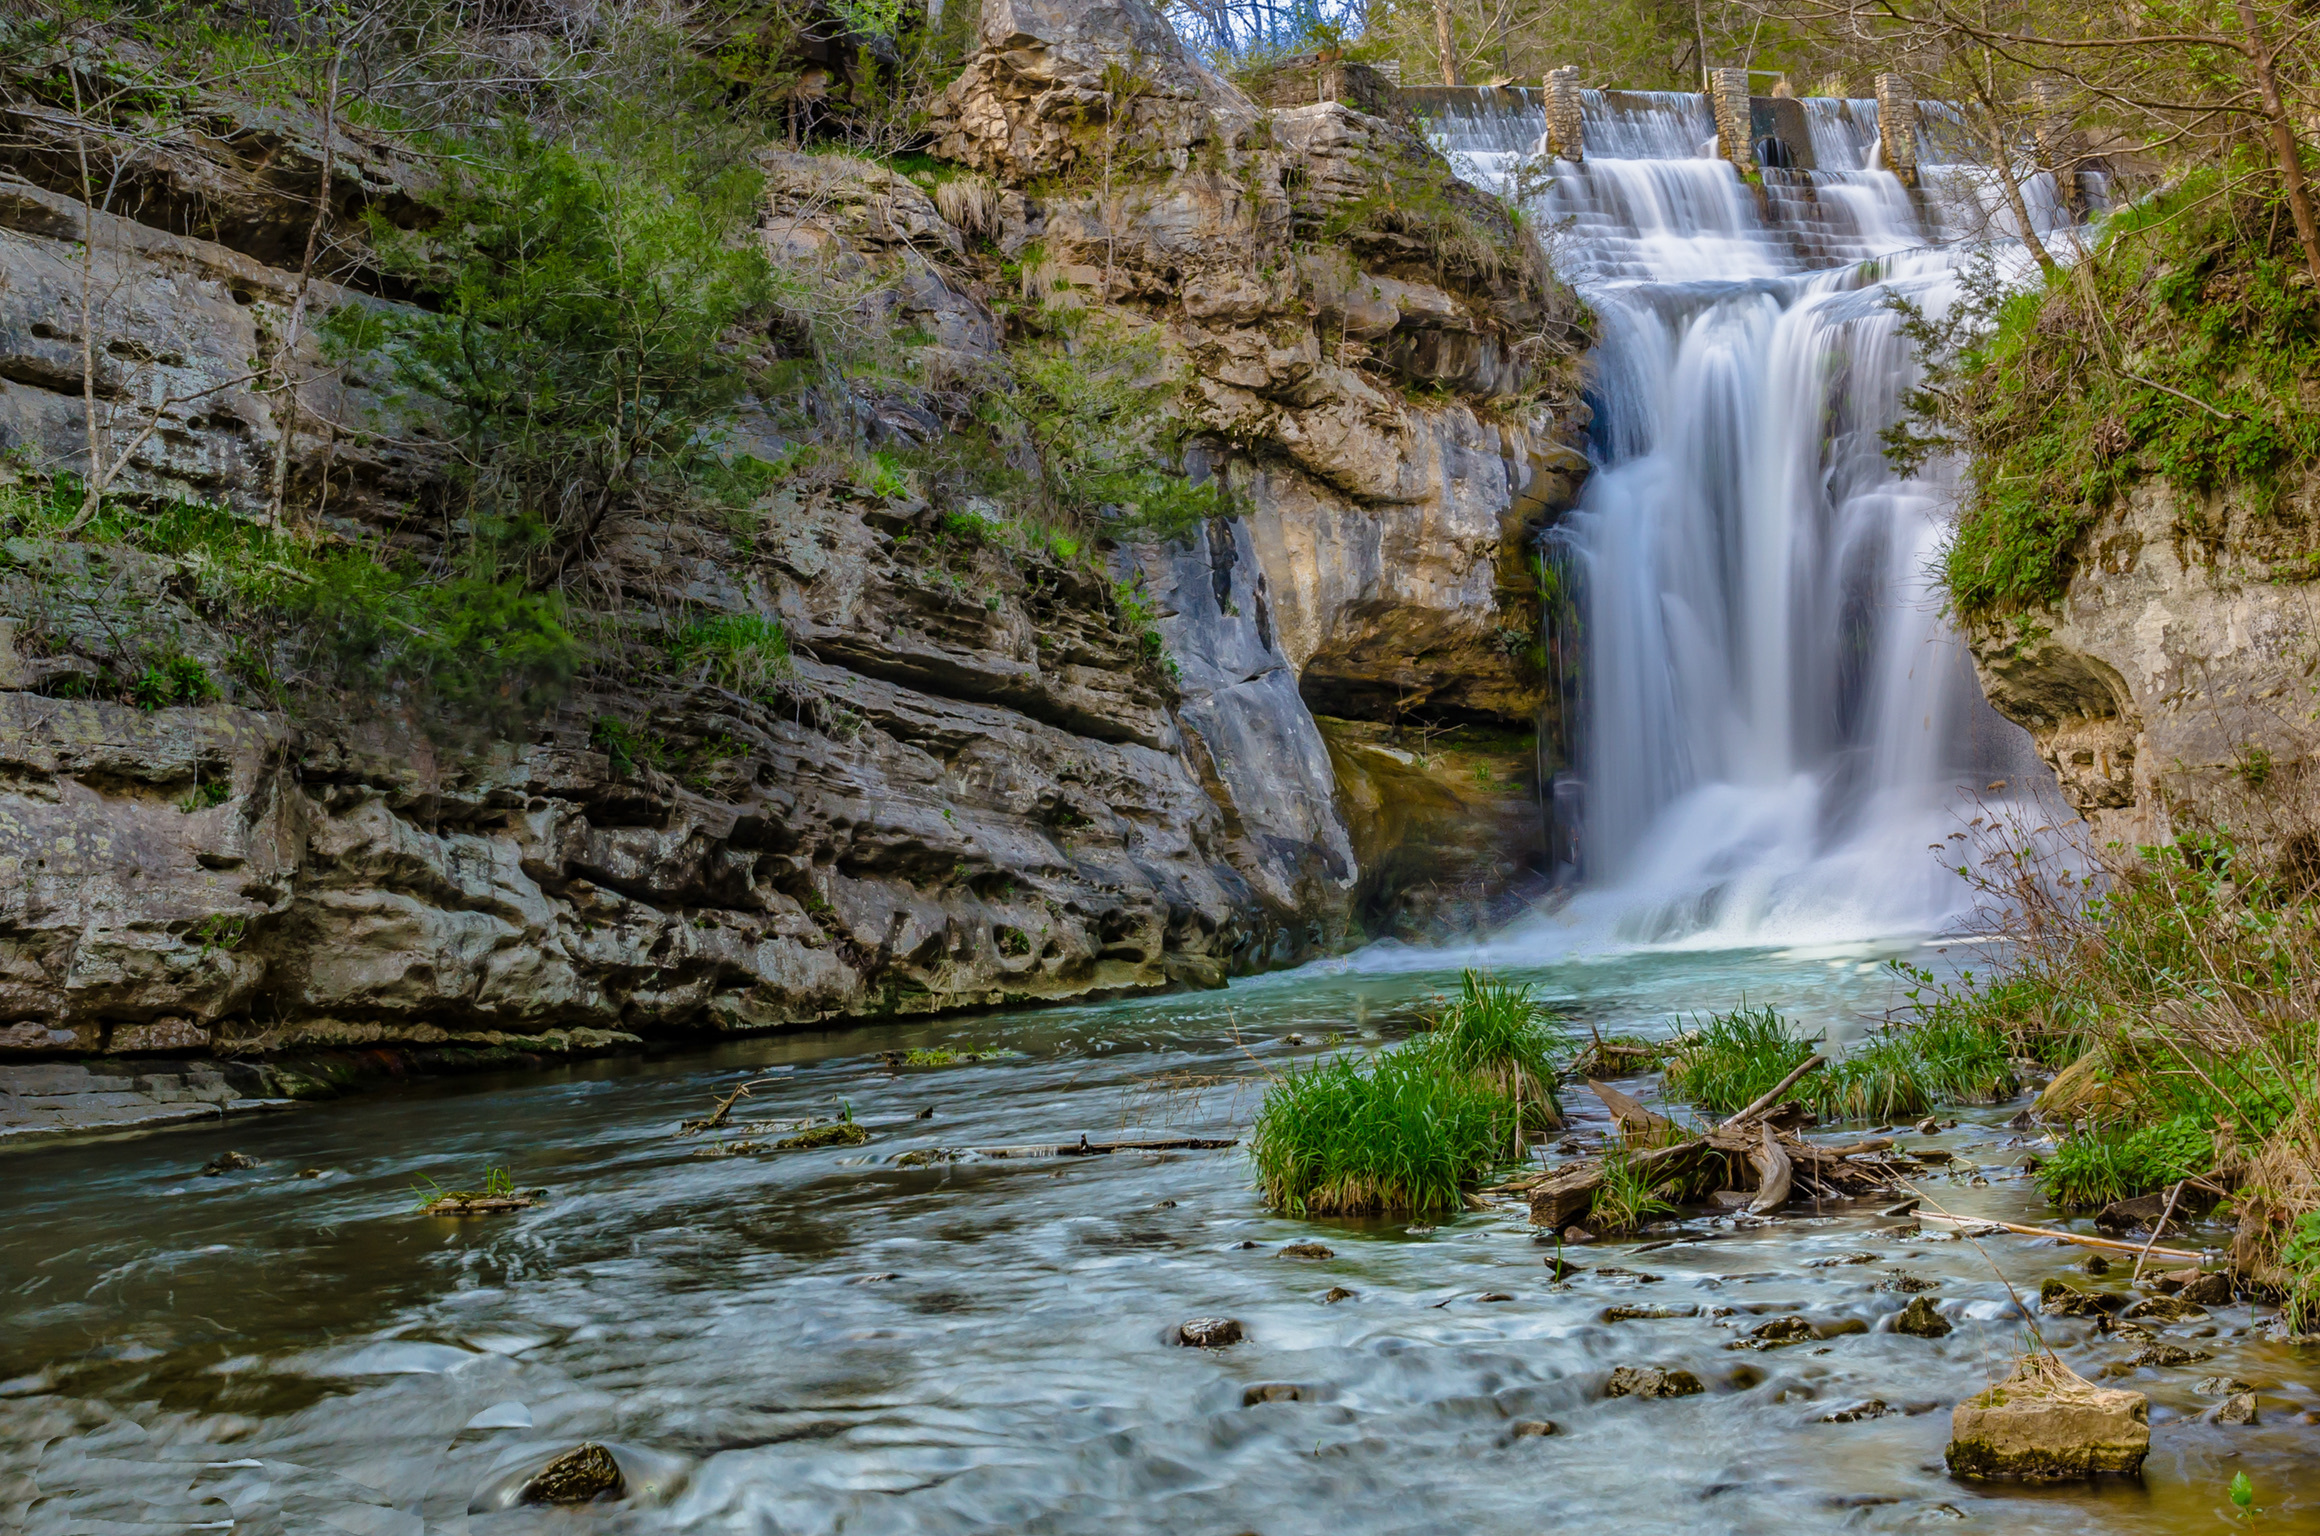 Marble Falls outside of Harrison, Arkansas